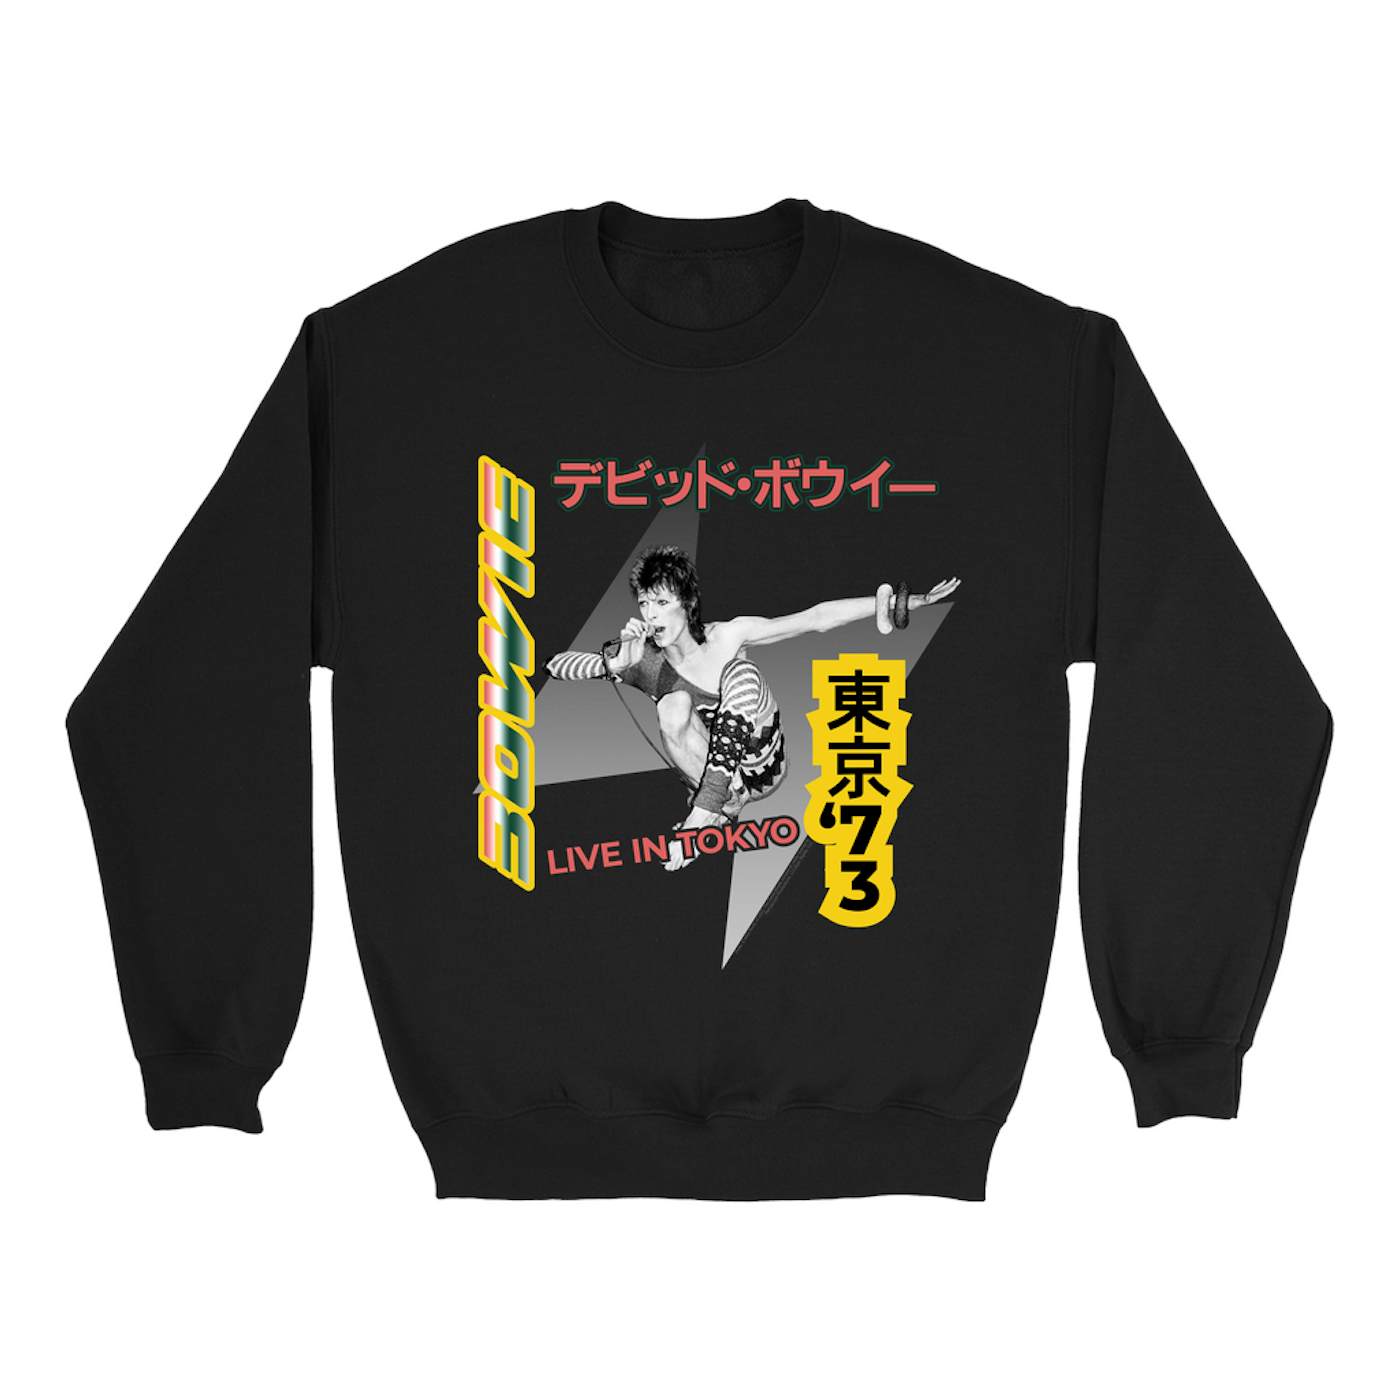 David Bowie Sweatshirt | 1973 Live In Tokyo (Merchbar Exclusive) David Bowie Sweatshirt